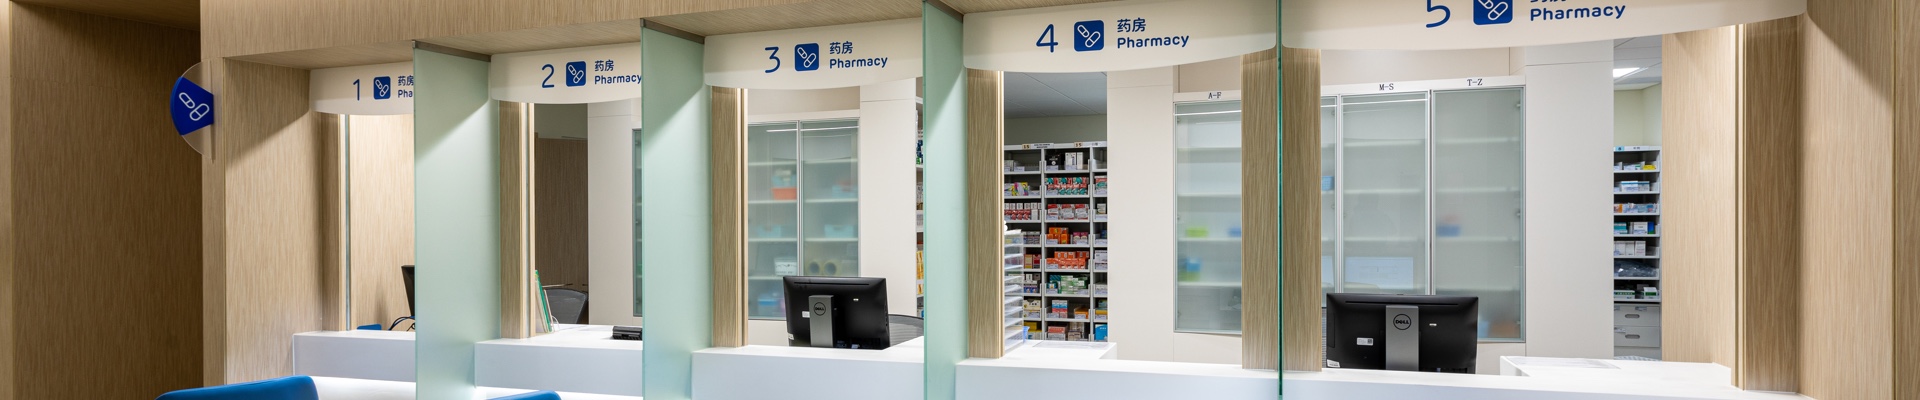 hospital pharmacy design